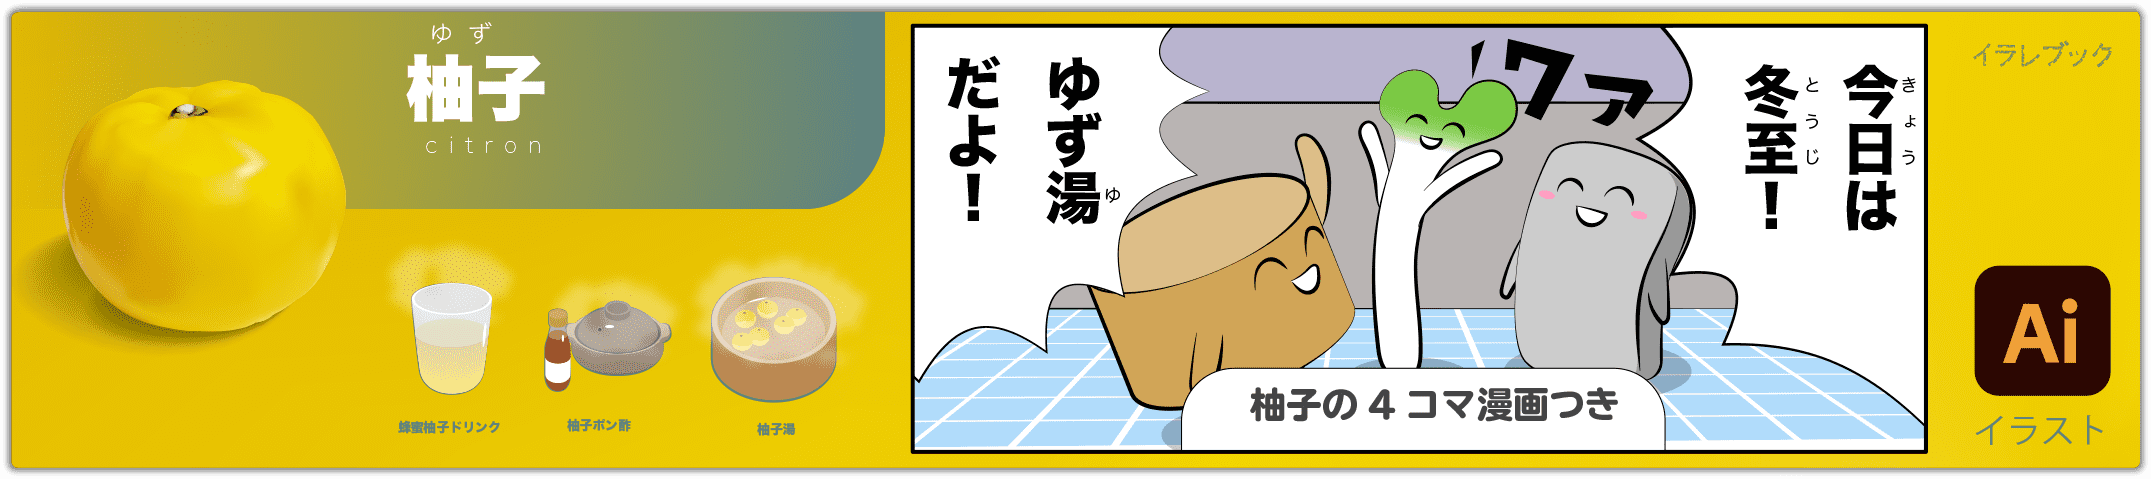 柚子 citron 4コマ漫画つきのイラスト